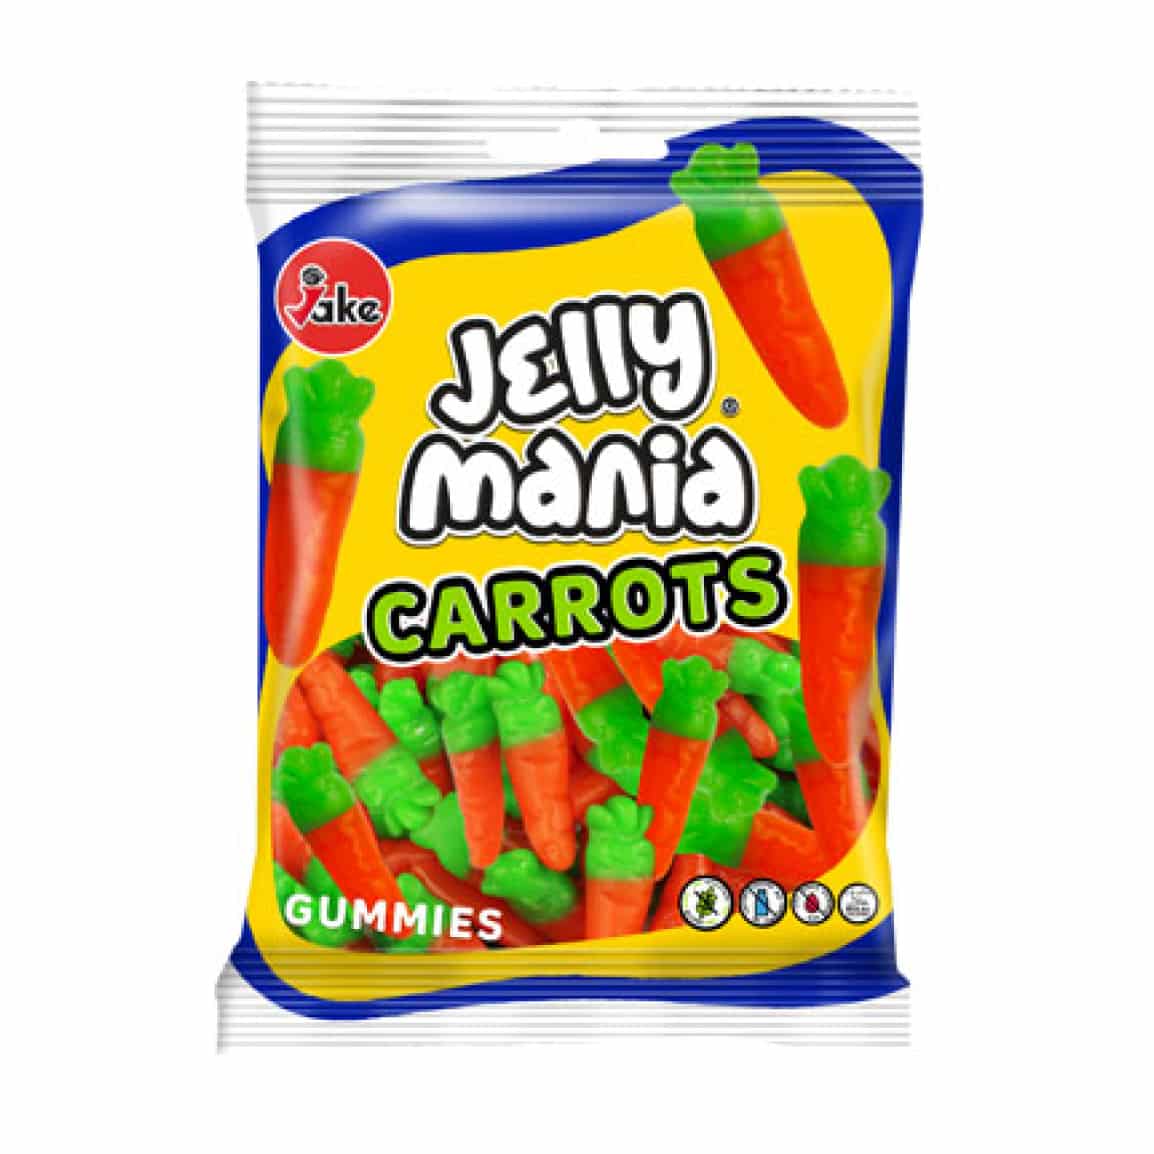 Läs mer om Jake Jelly Mania Carrots 100g